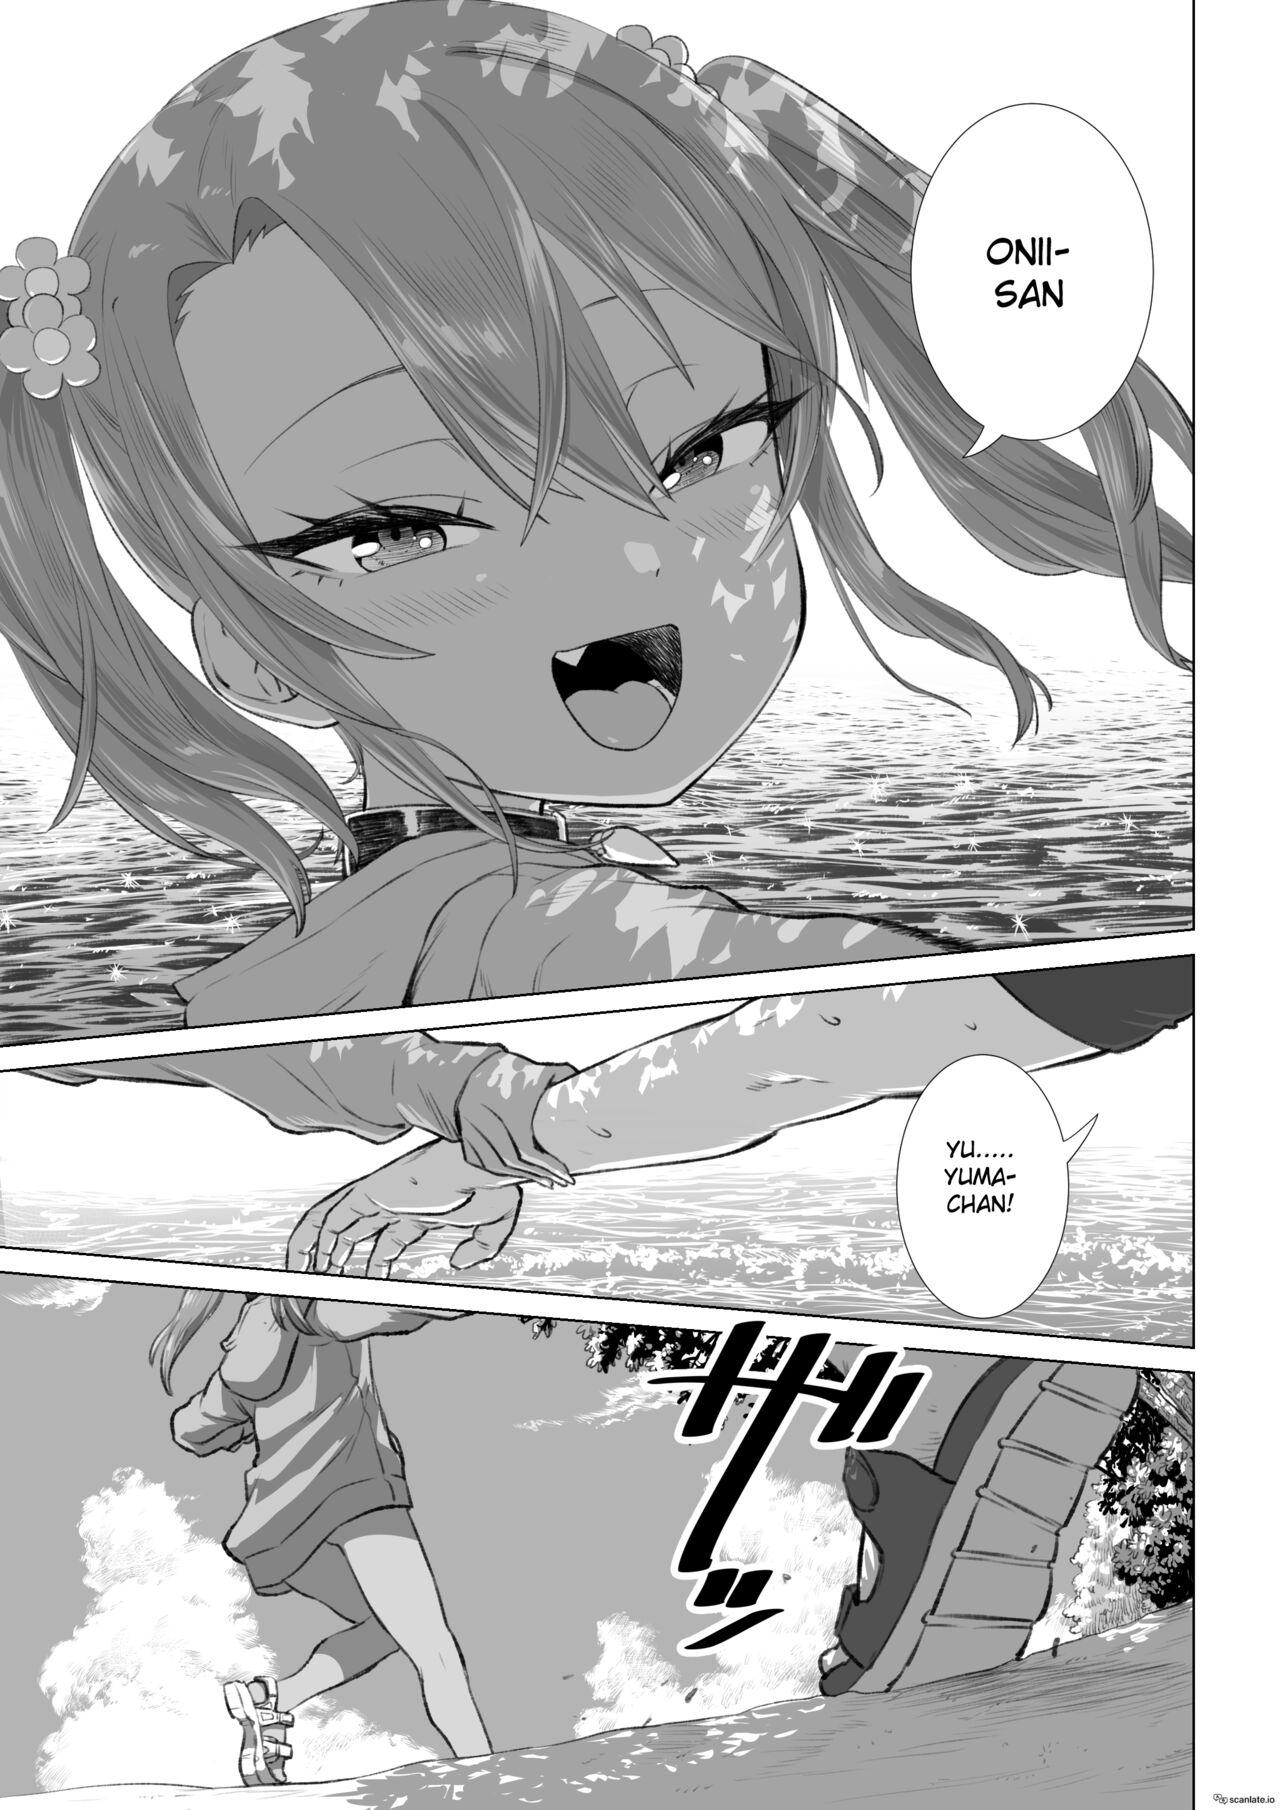 Yuma-chan and the Sea Part 2 0